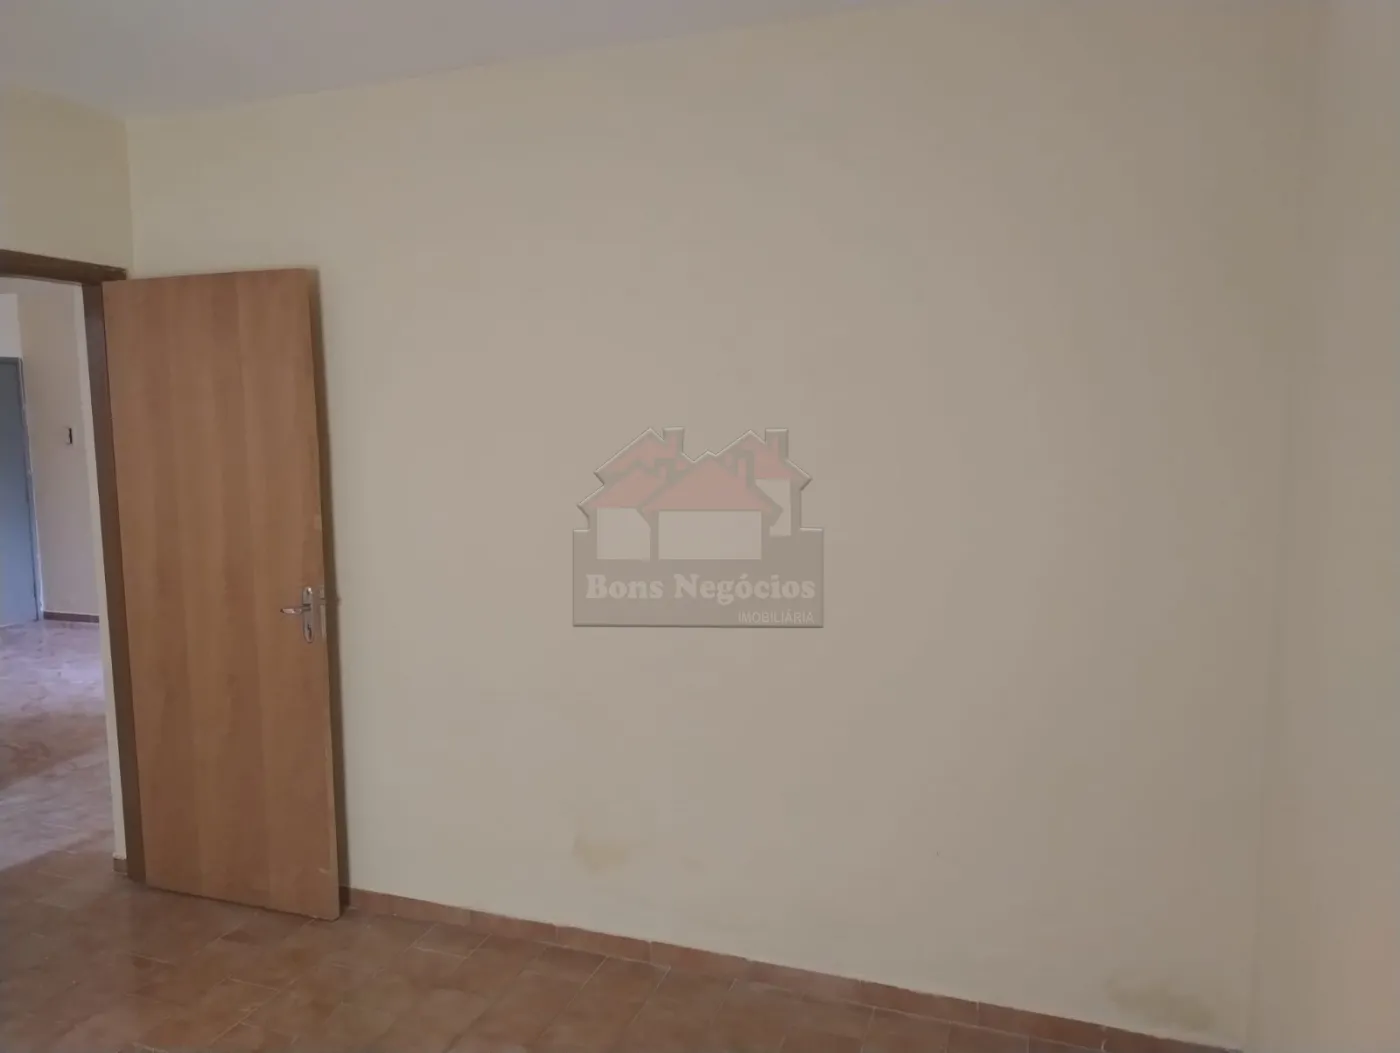 Alugar Apartamento / Padrão em Ribeirão Preto R$ 650,00 - Foto 7